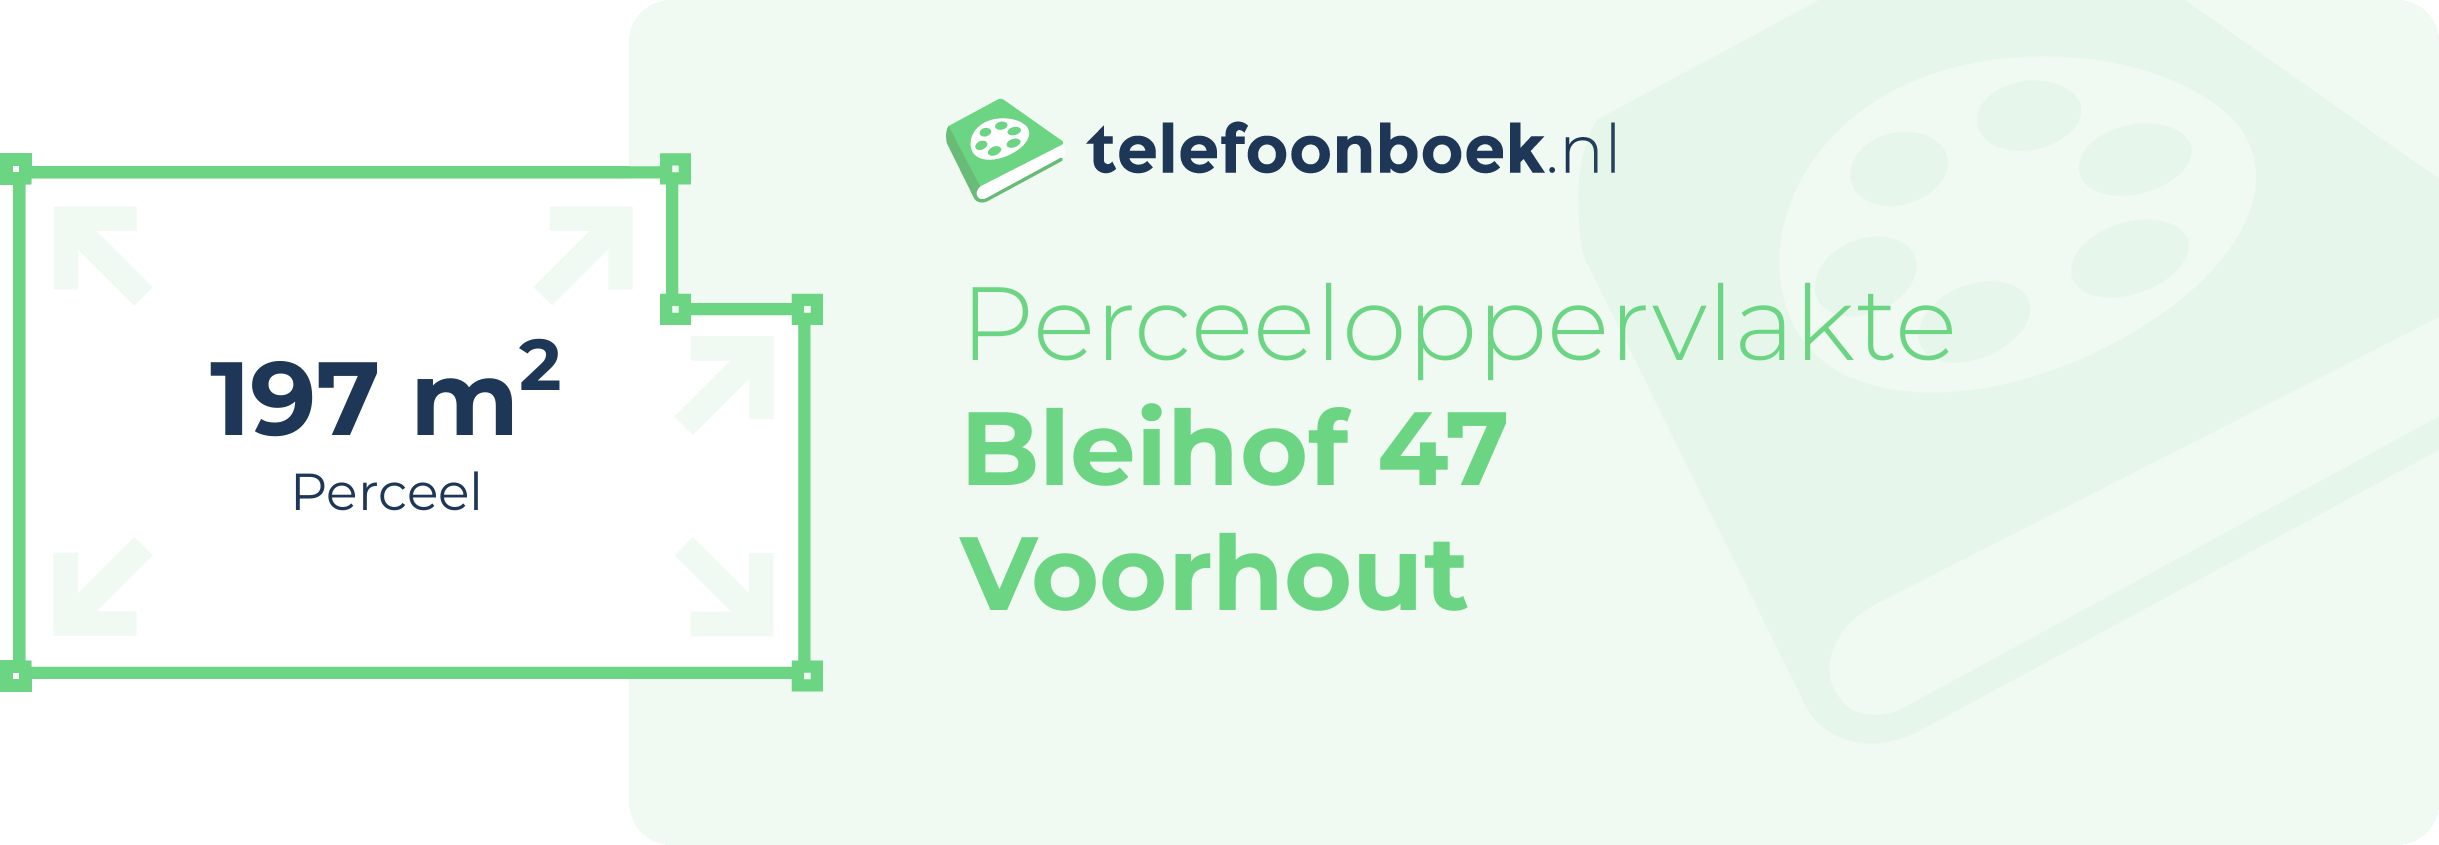 Perceeloppervlakte Bleihof 47 Voorhout